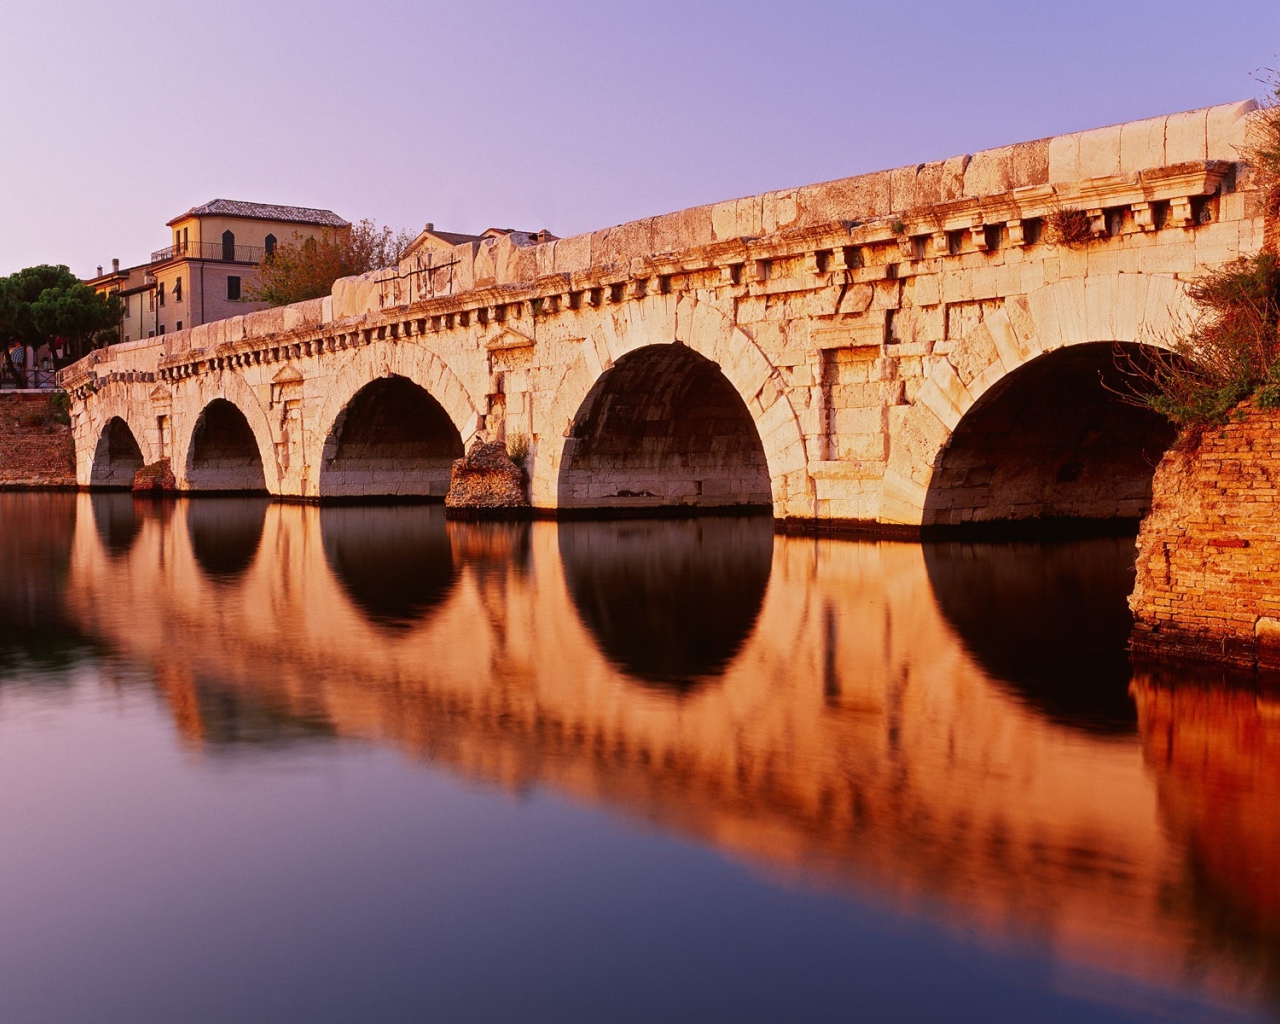 Мост Тиберия на курорте в Римини, Италия